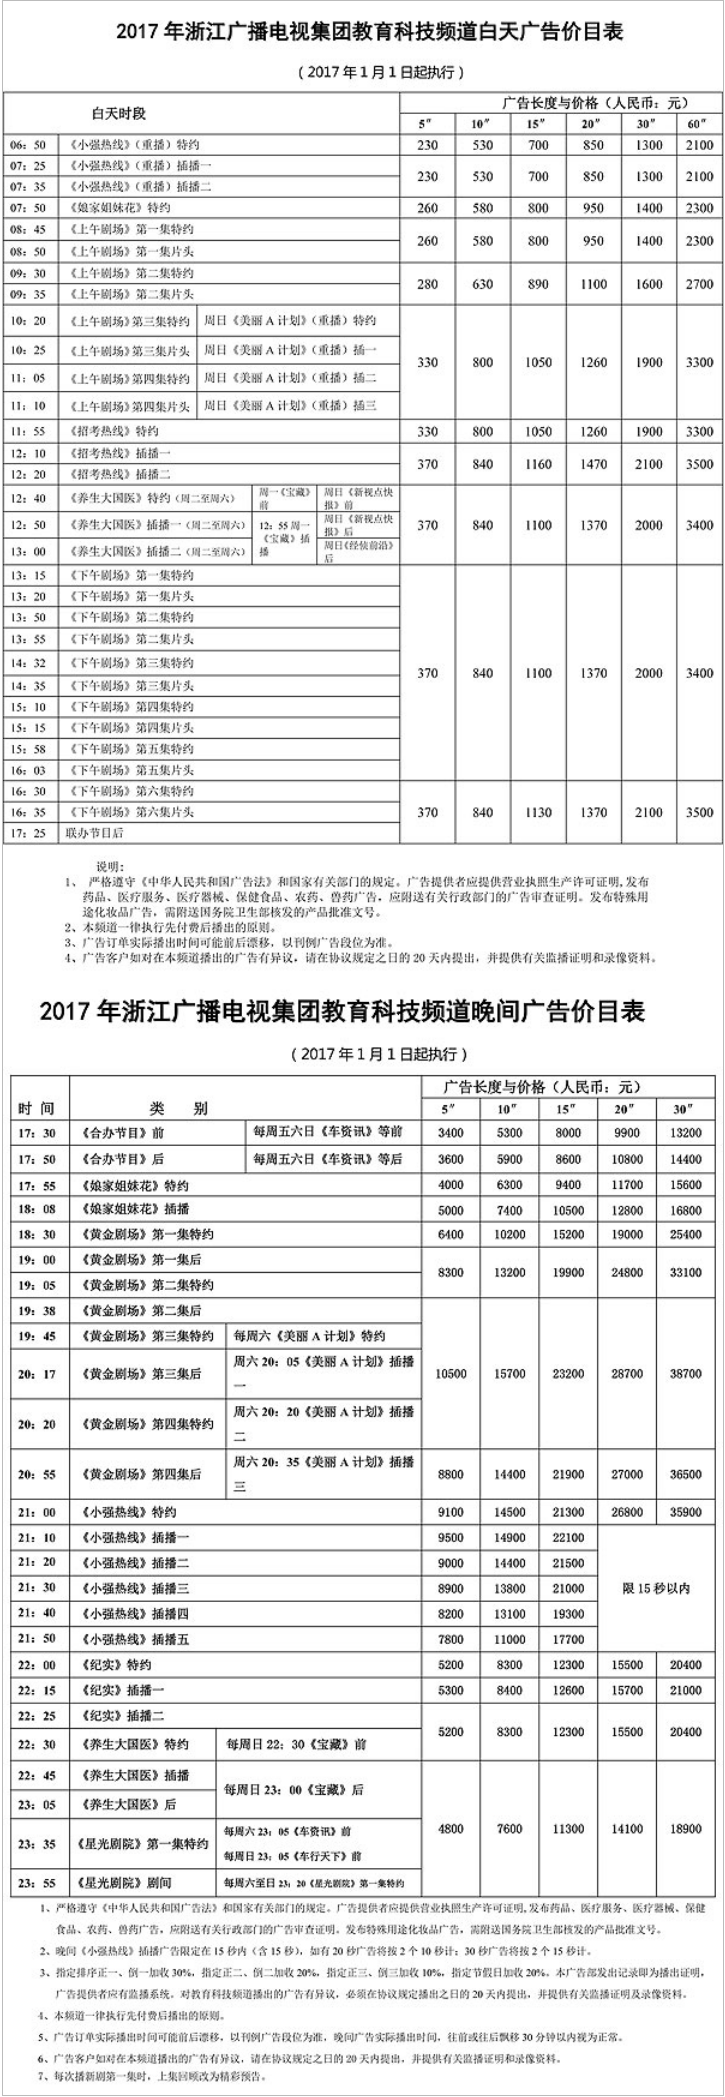 2017浙江电视台教育科技频道 ZTV-4广告报价表.png